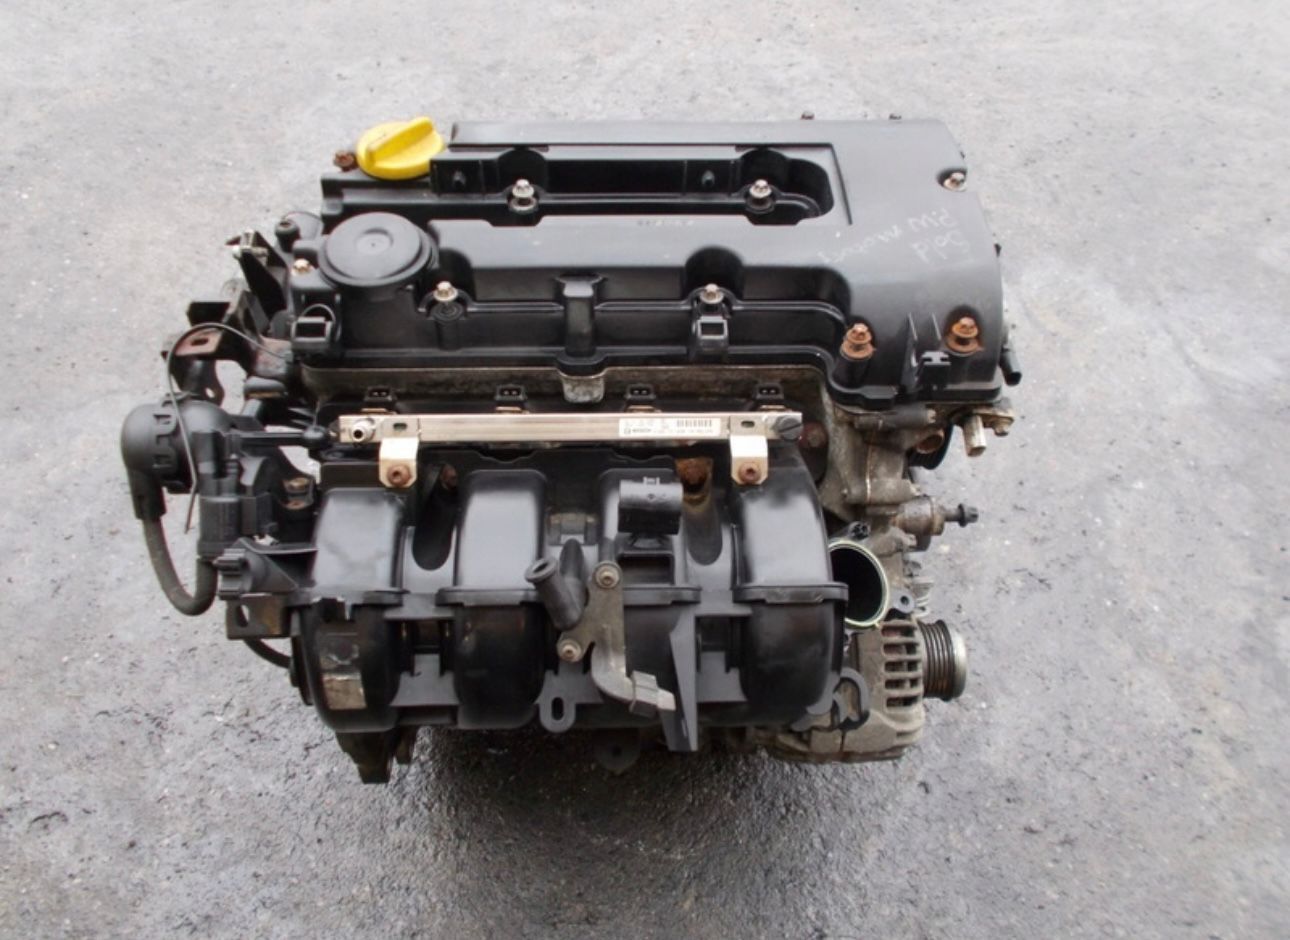 Motor Opel Corsa E 1.4 Benzina cod motor A14XER